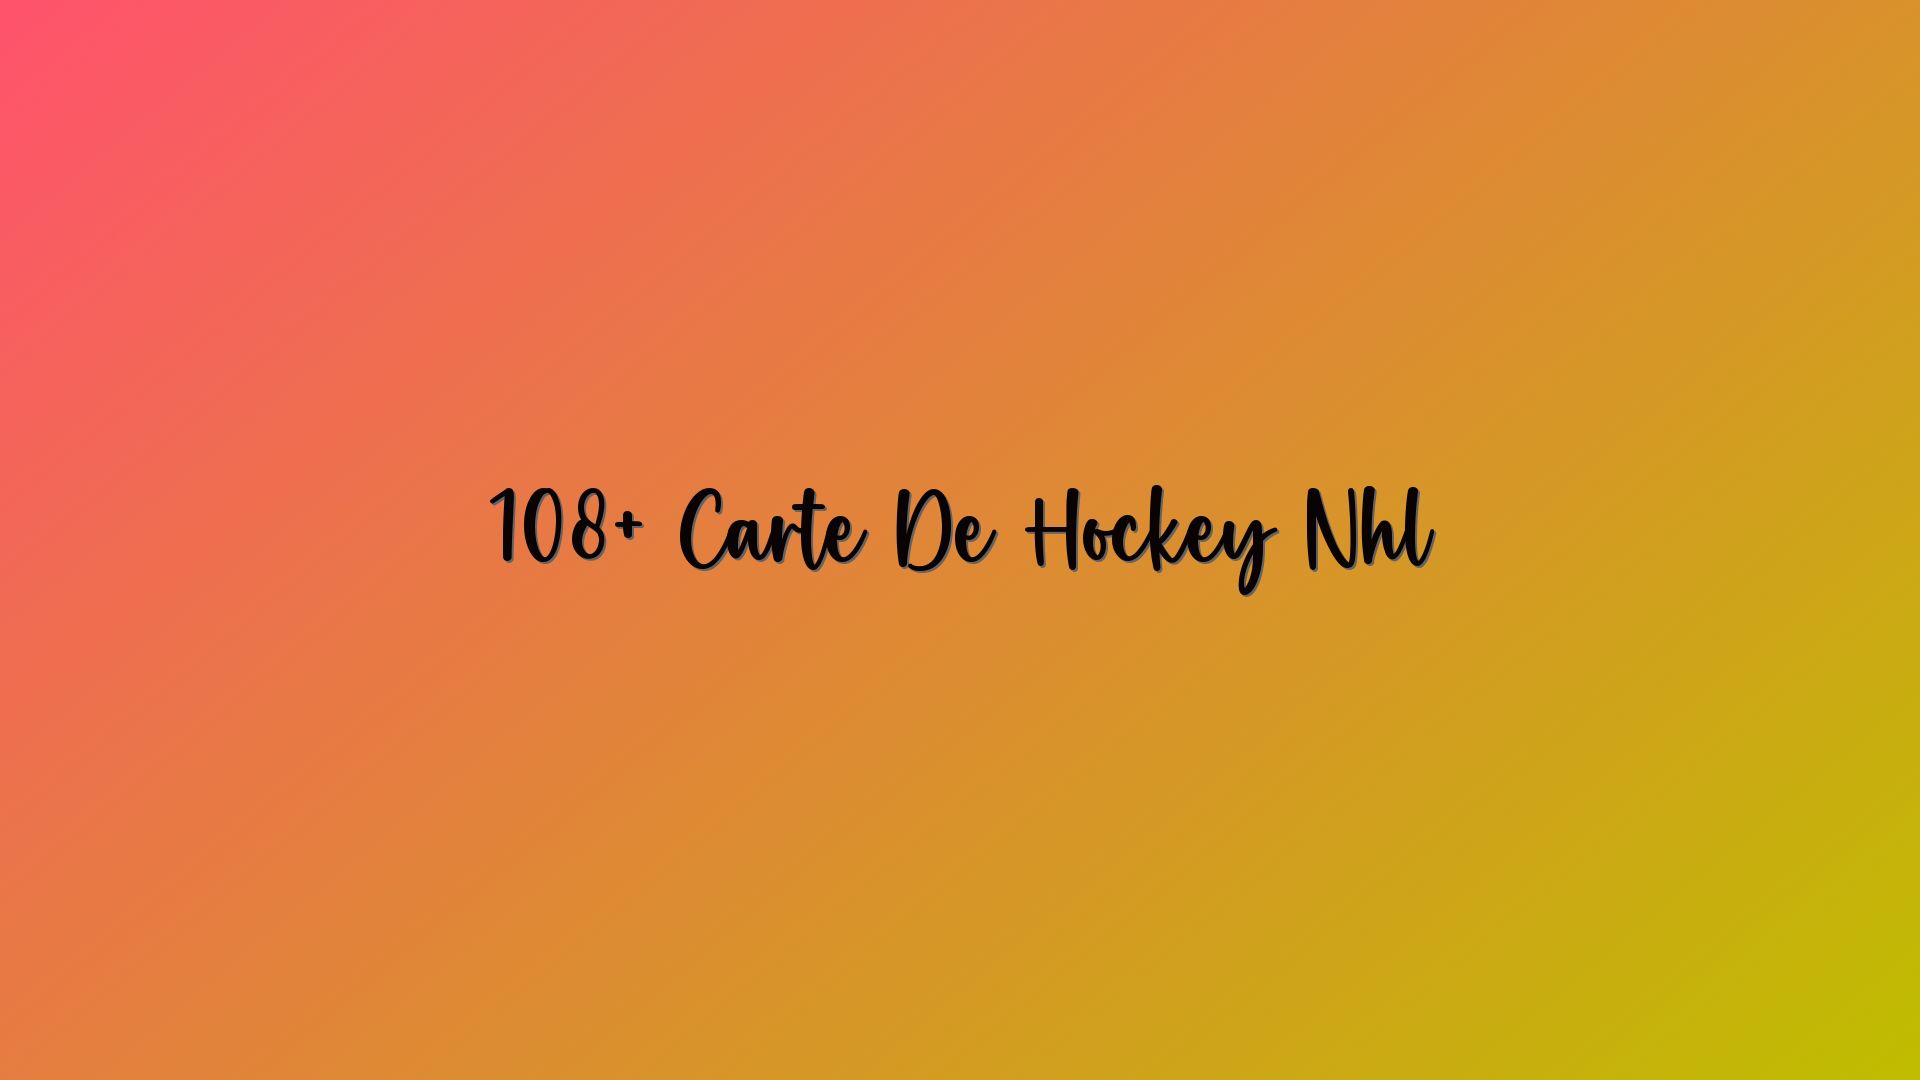 108+ Carte De Hockey Nhl